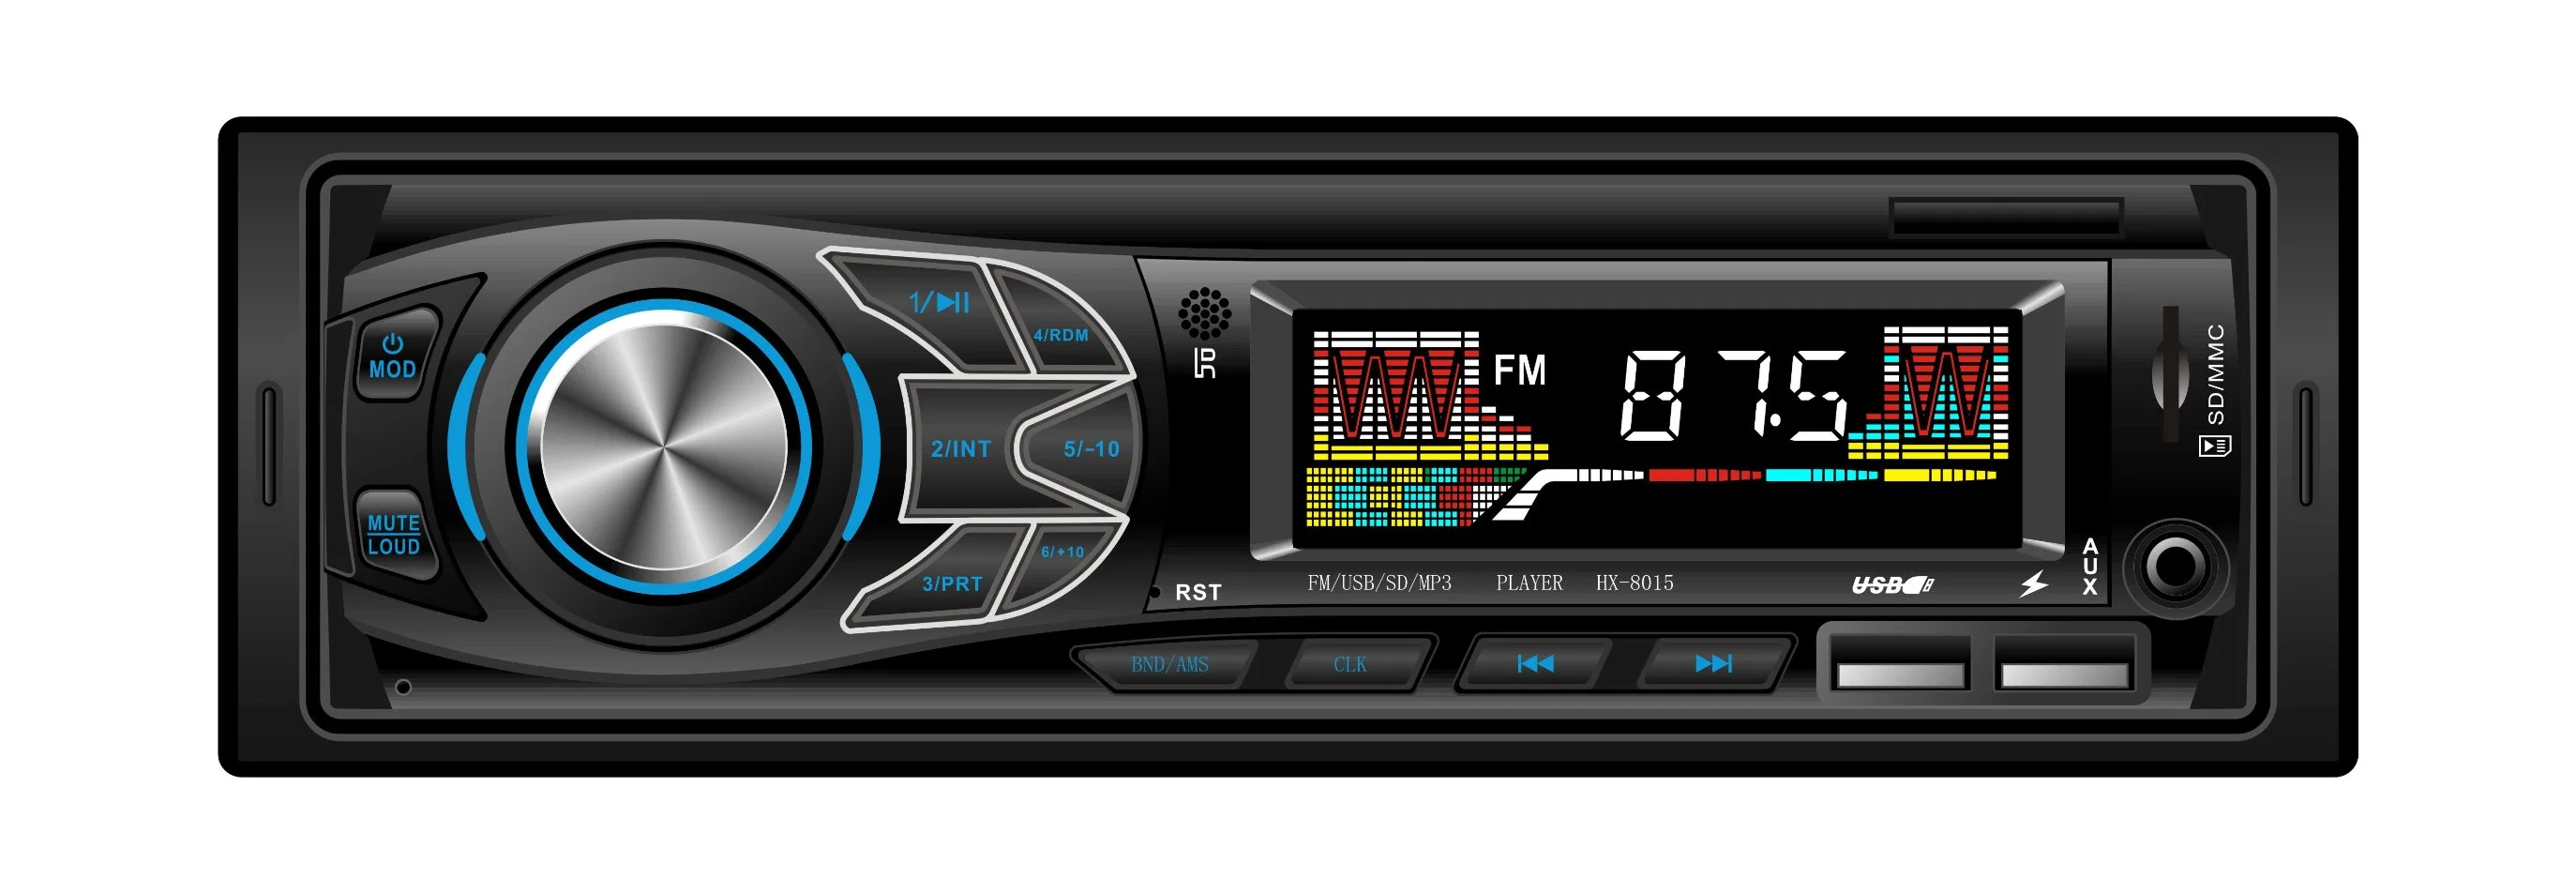 L3015 1 DIN électrique Voiture Lecteur audio MP3 radio du système